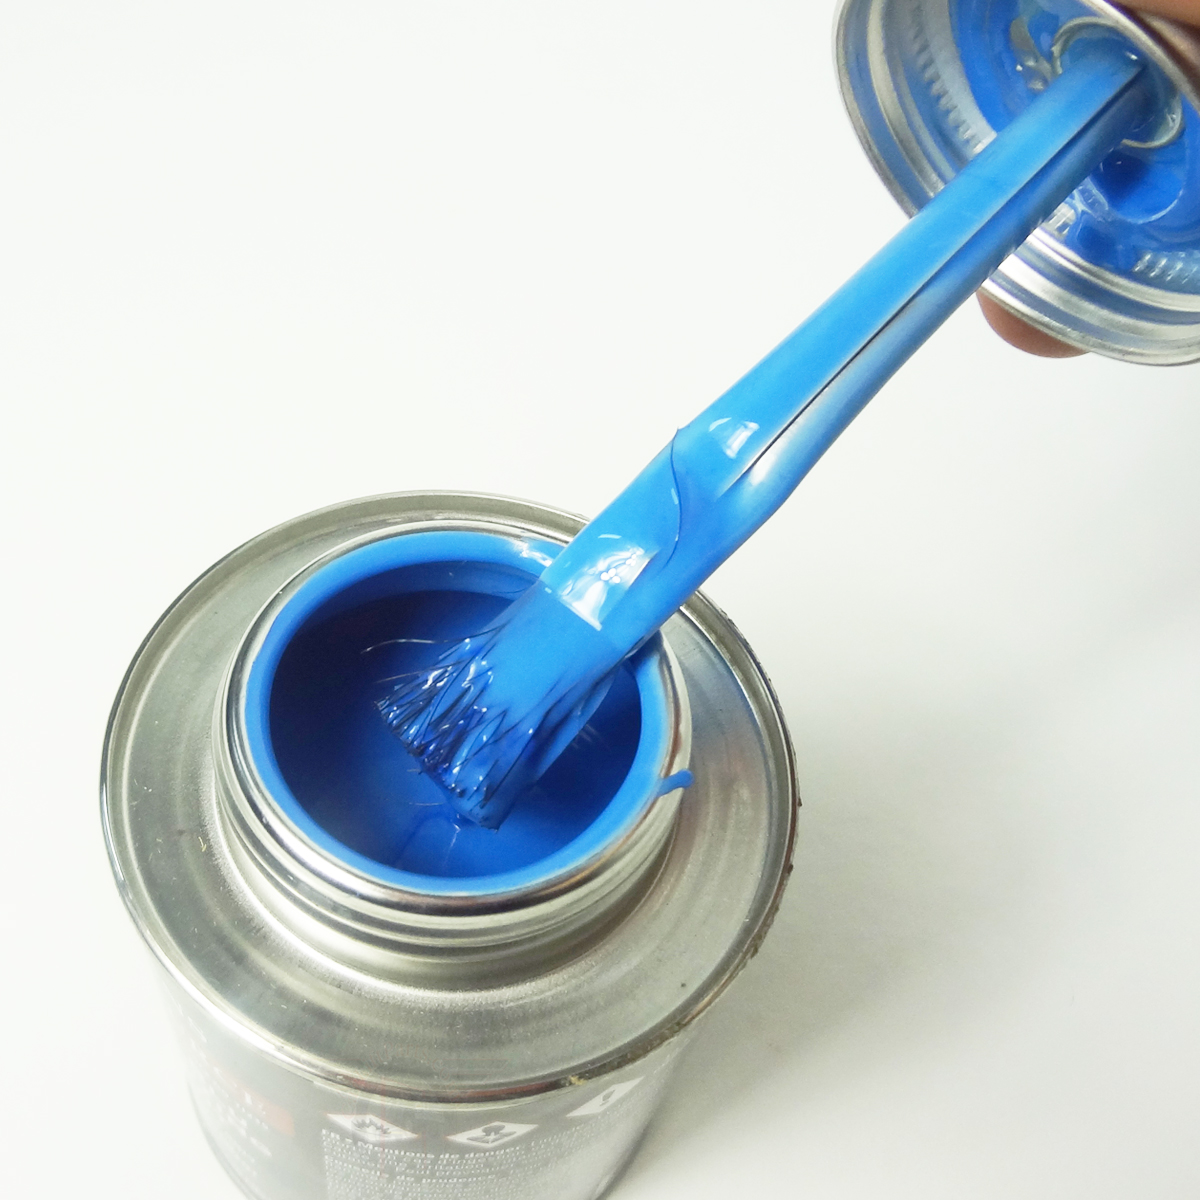 6) QUART CANS - Super Blu Vulcanizing Cement Blue Tire patch glue 32oz can  blue